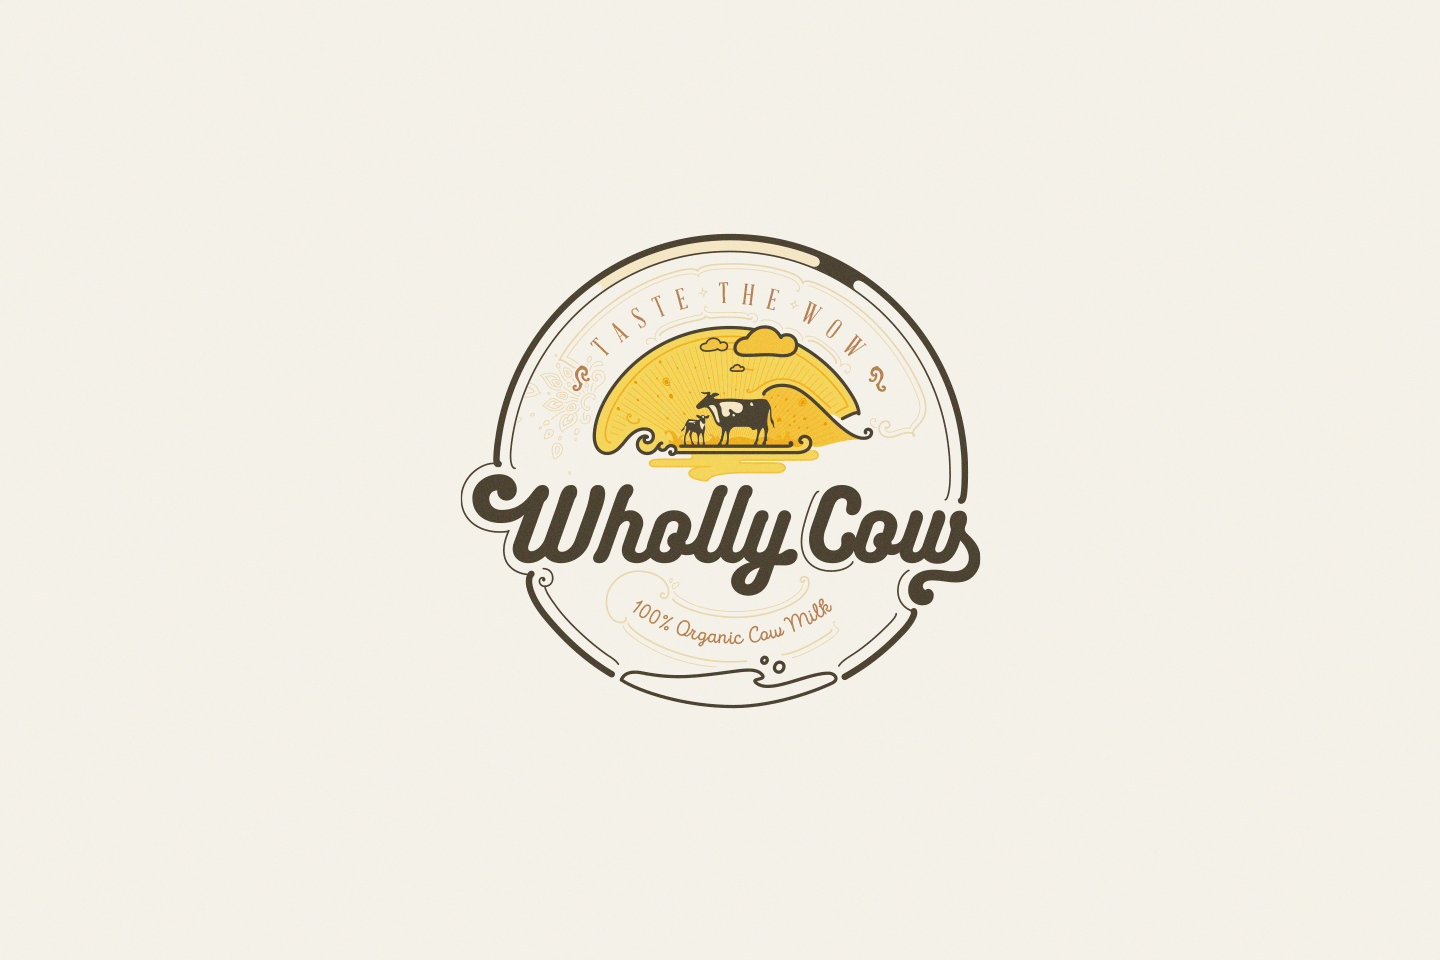 whollycow logo positive